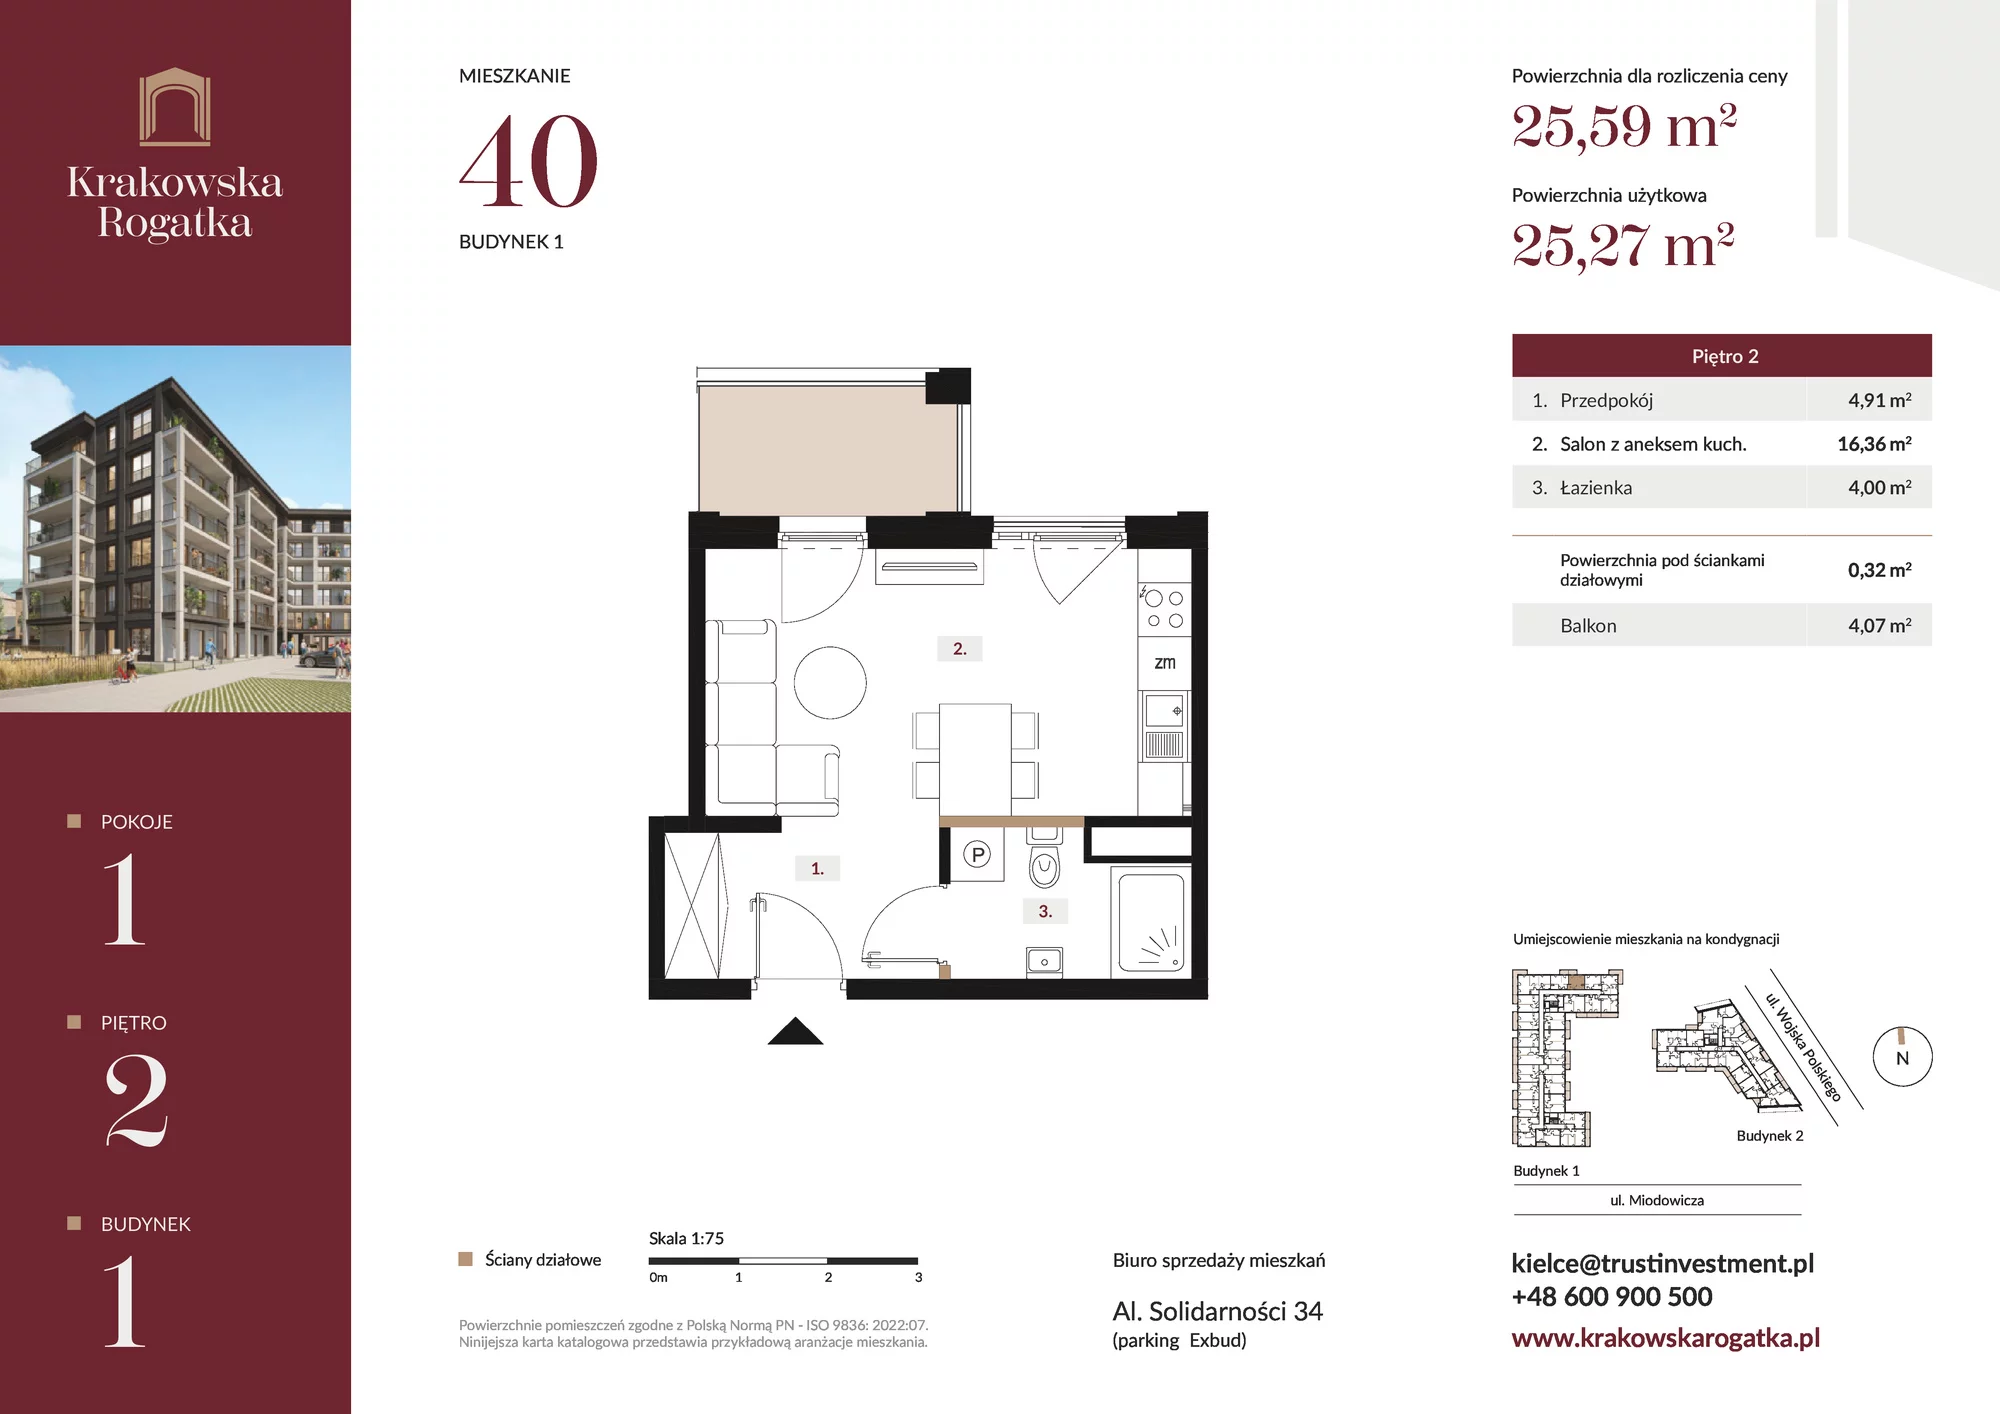 Mieszkanie 25,59 m², piętro 2, oferta nr Budynek 1 Mieszkanie 40, Krakowska Rogatka, Kielce, ul. Miodowicza 1